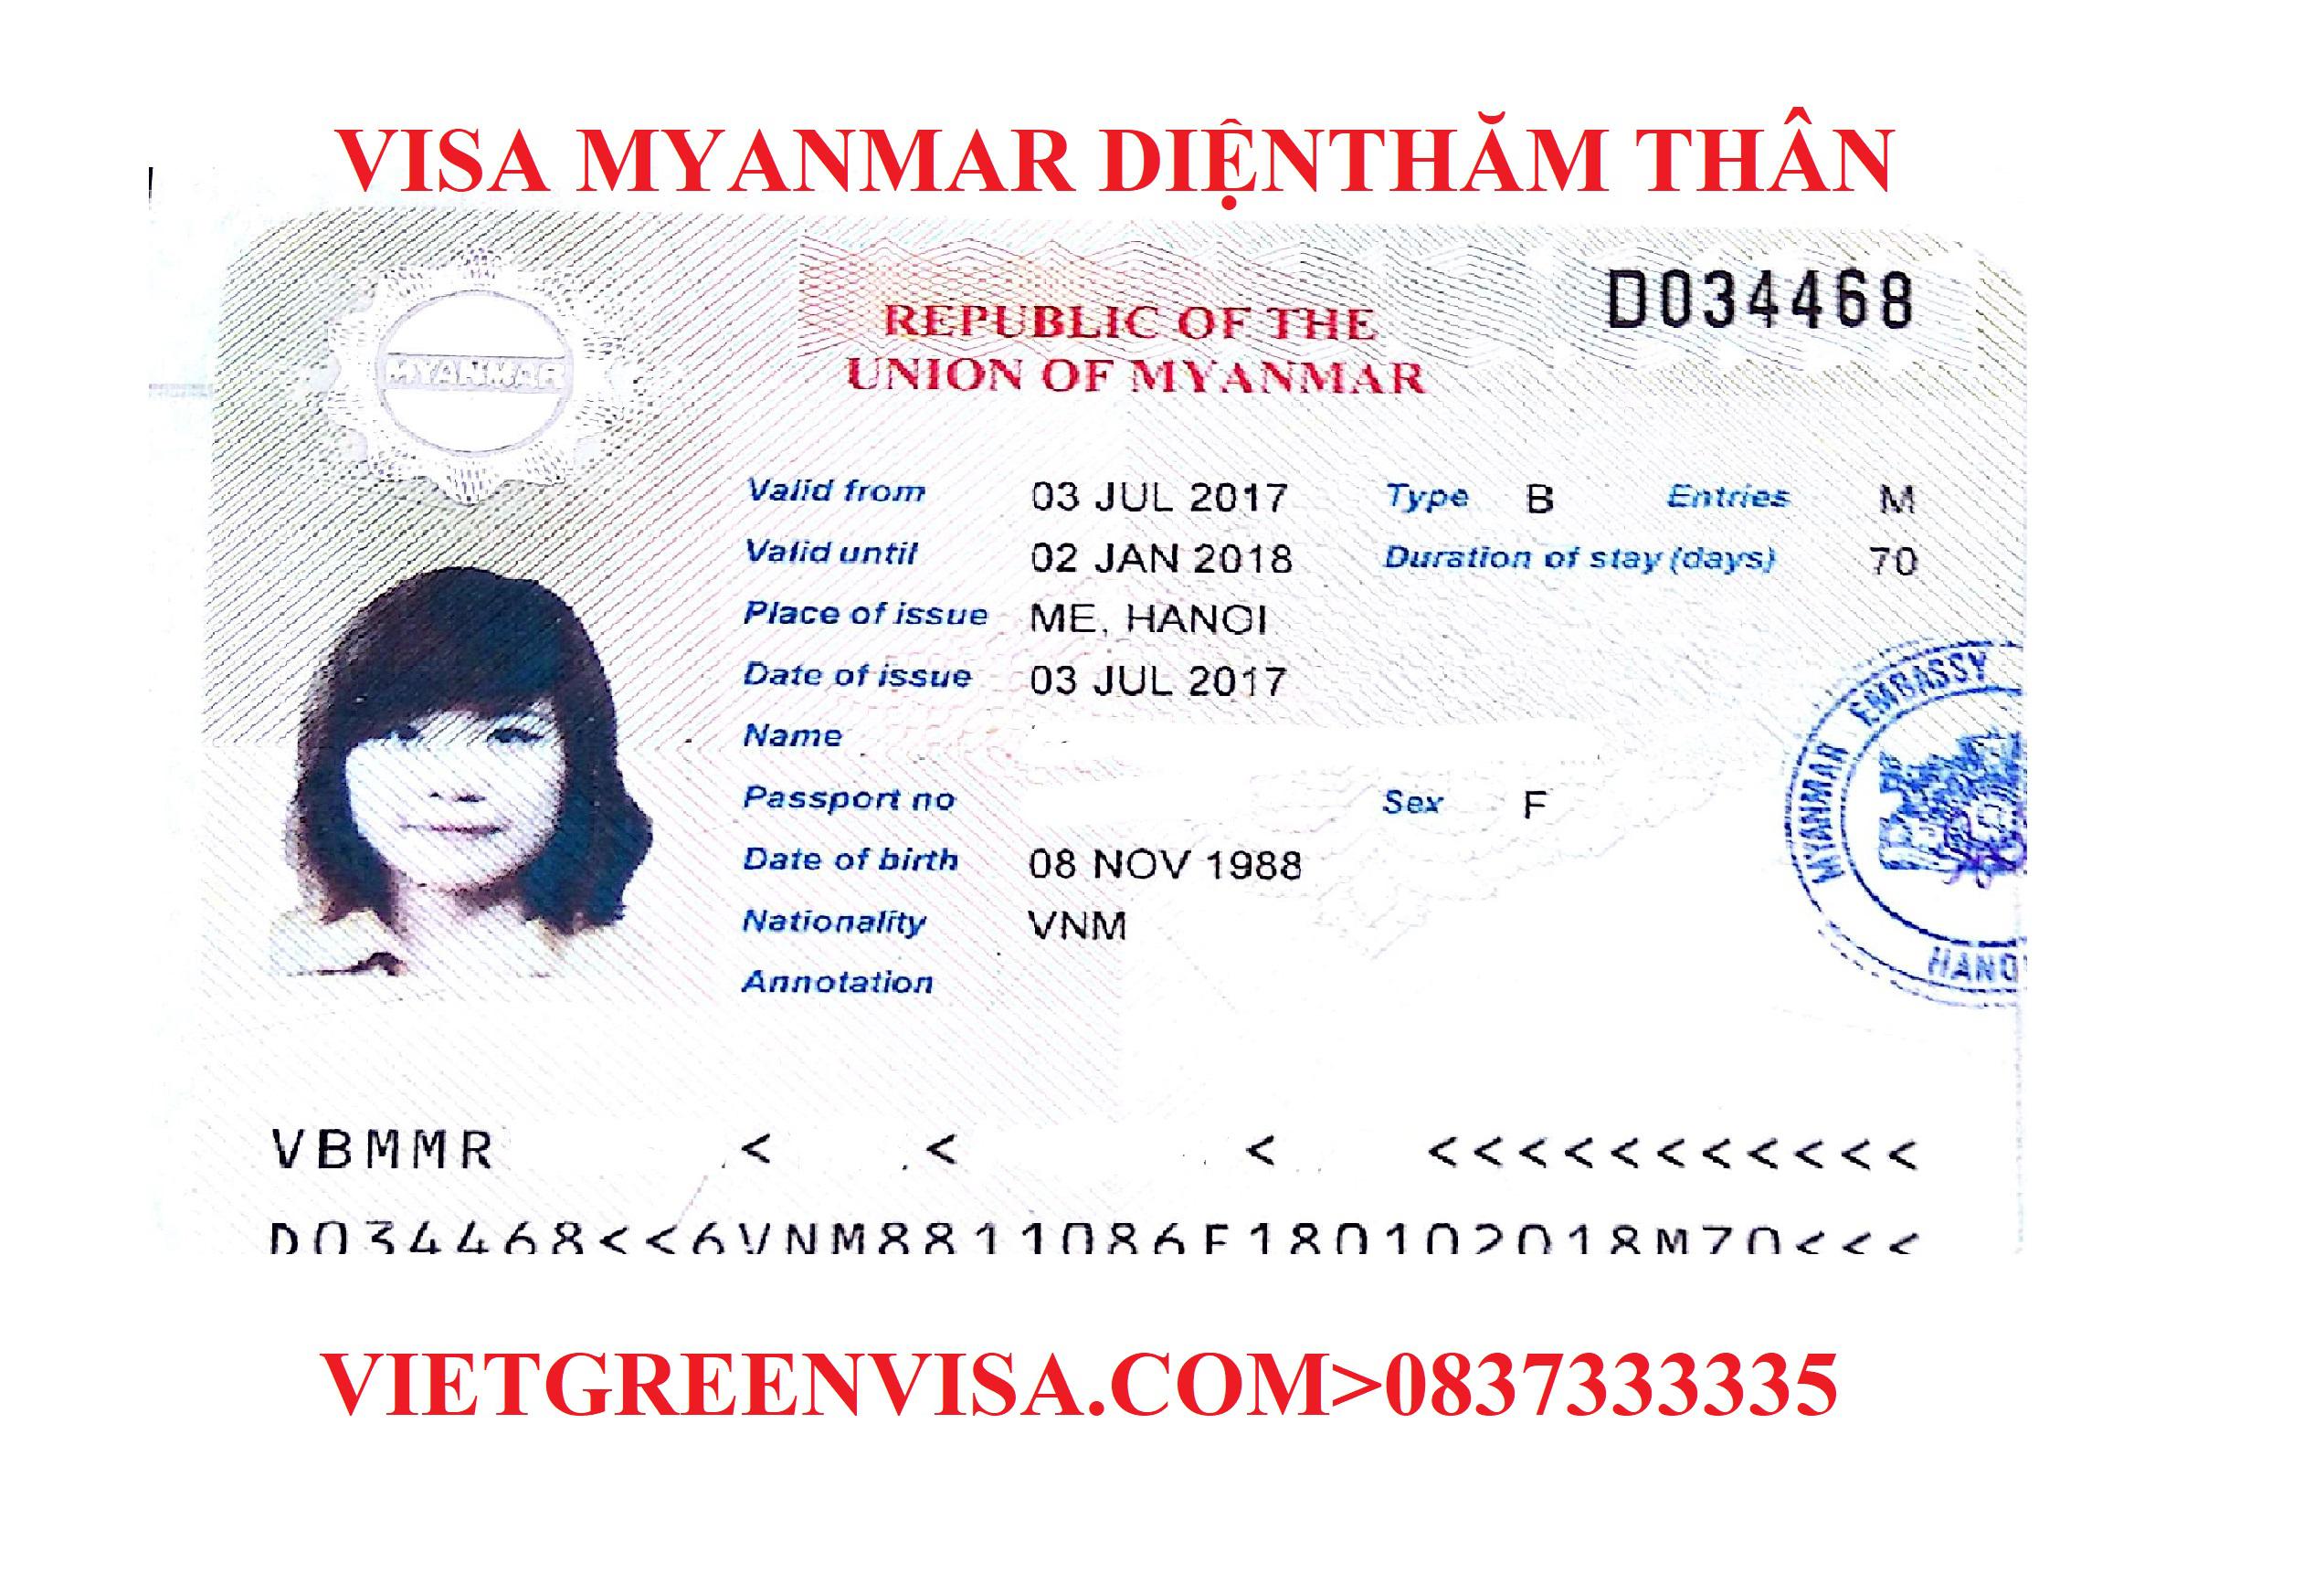 Thủ tục xin visa Myanmar thăm thân | Lưu trú 1 - 3 - 6 tháng | 100% đạt visa